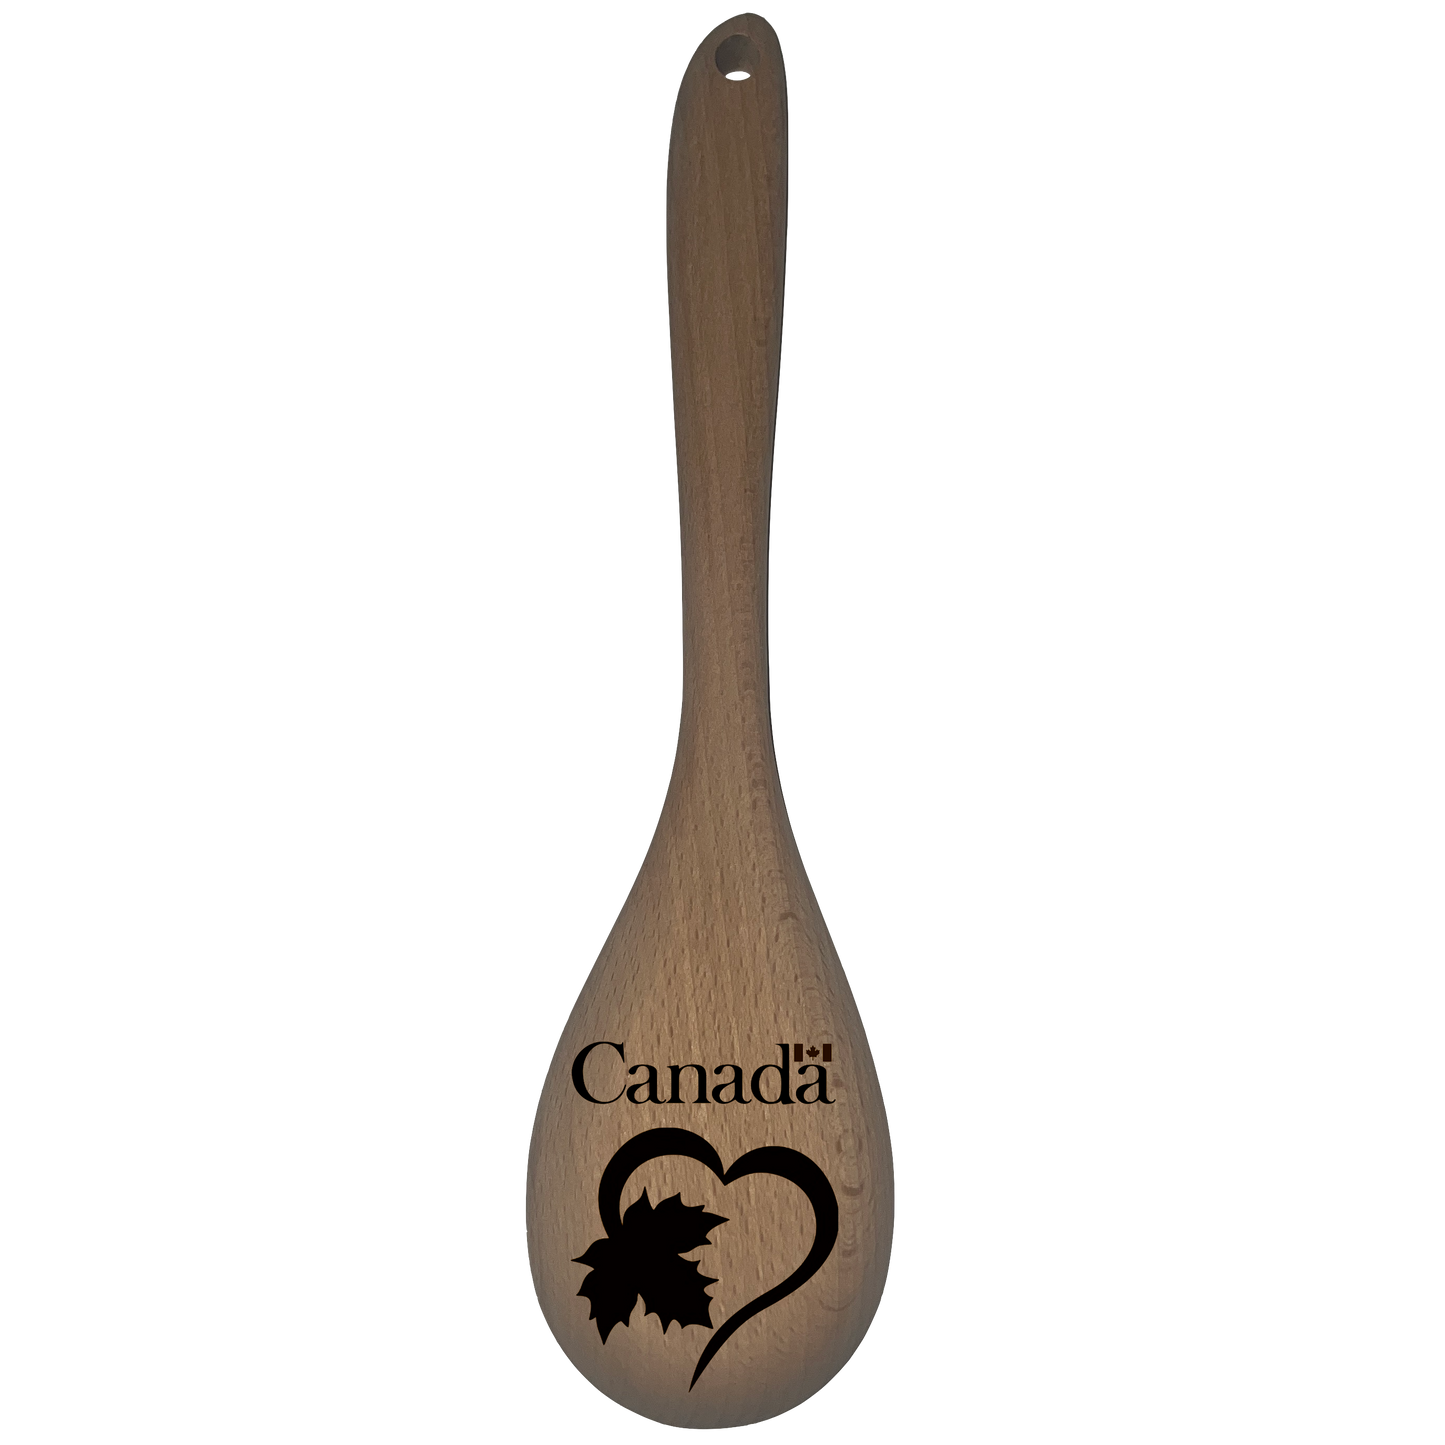 Canada - Spoon